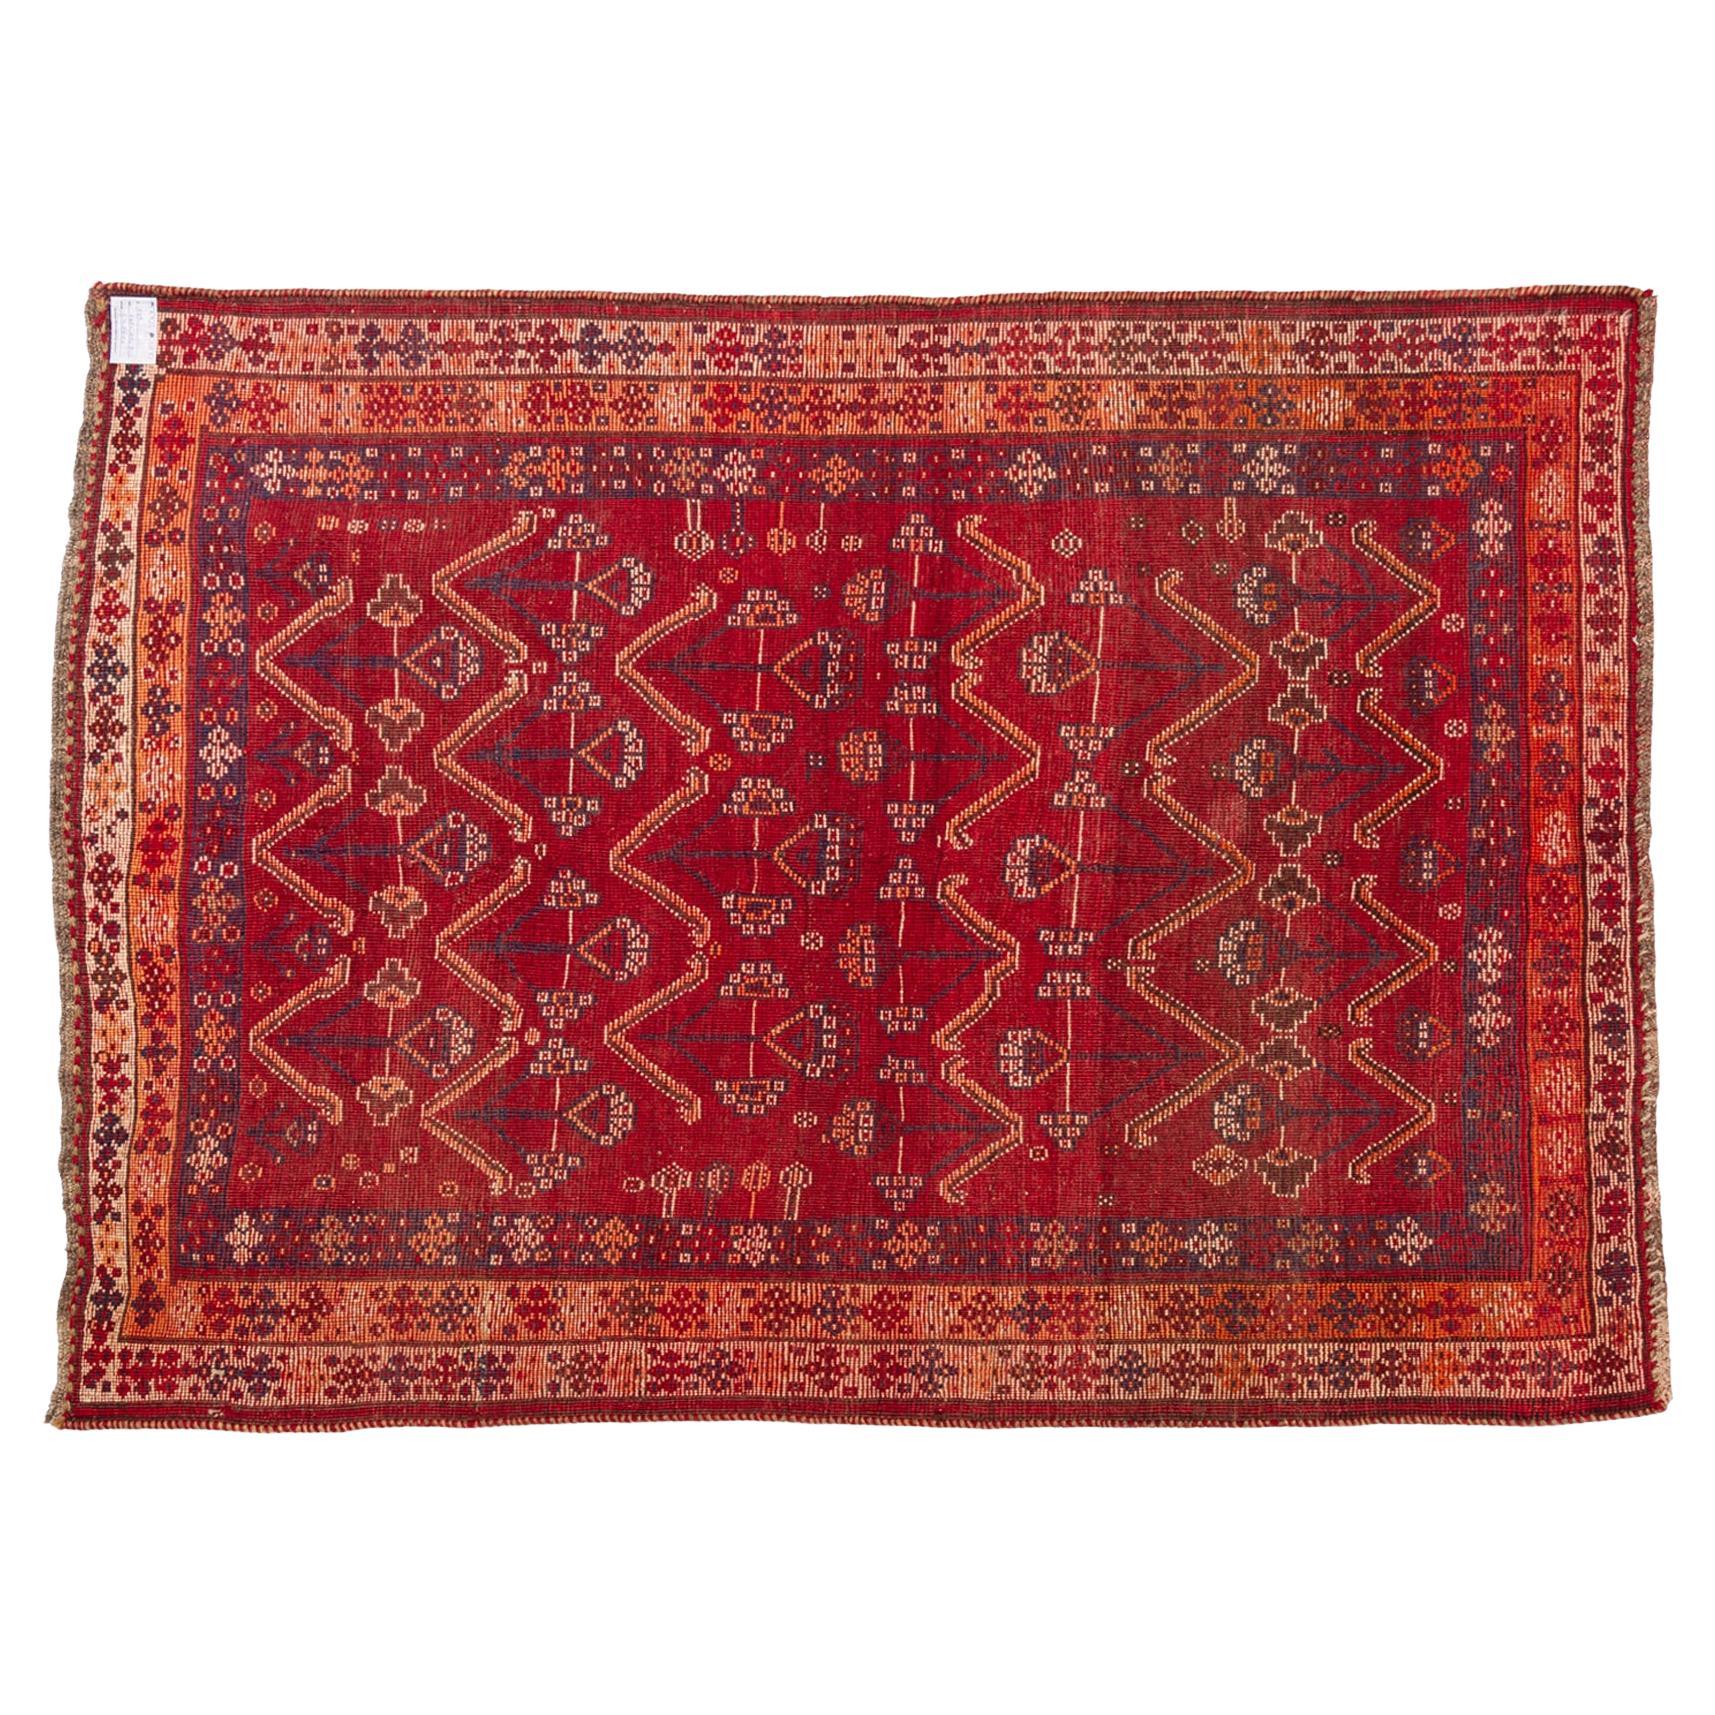 Nr. 953 - Ein Teppich mit naivem Geschmack, weil er von Nomaden hergestellt wurde.  von Hand gesponnene und mit natürlichen Farben gefärbte Wolle, die vor Ort erhältlich ist. Das Design ist einfach und angenehm mit weißen Blumen auf dem gesamten